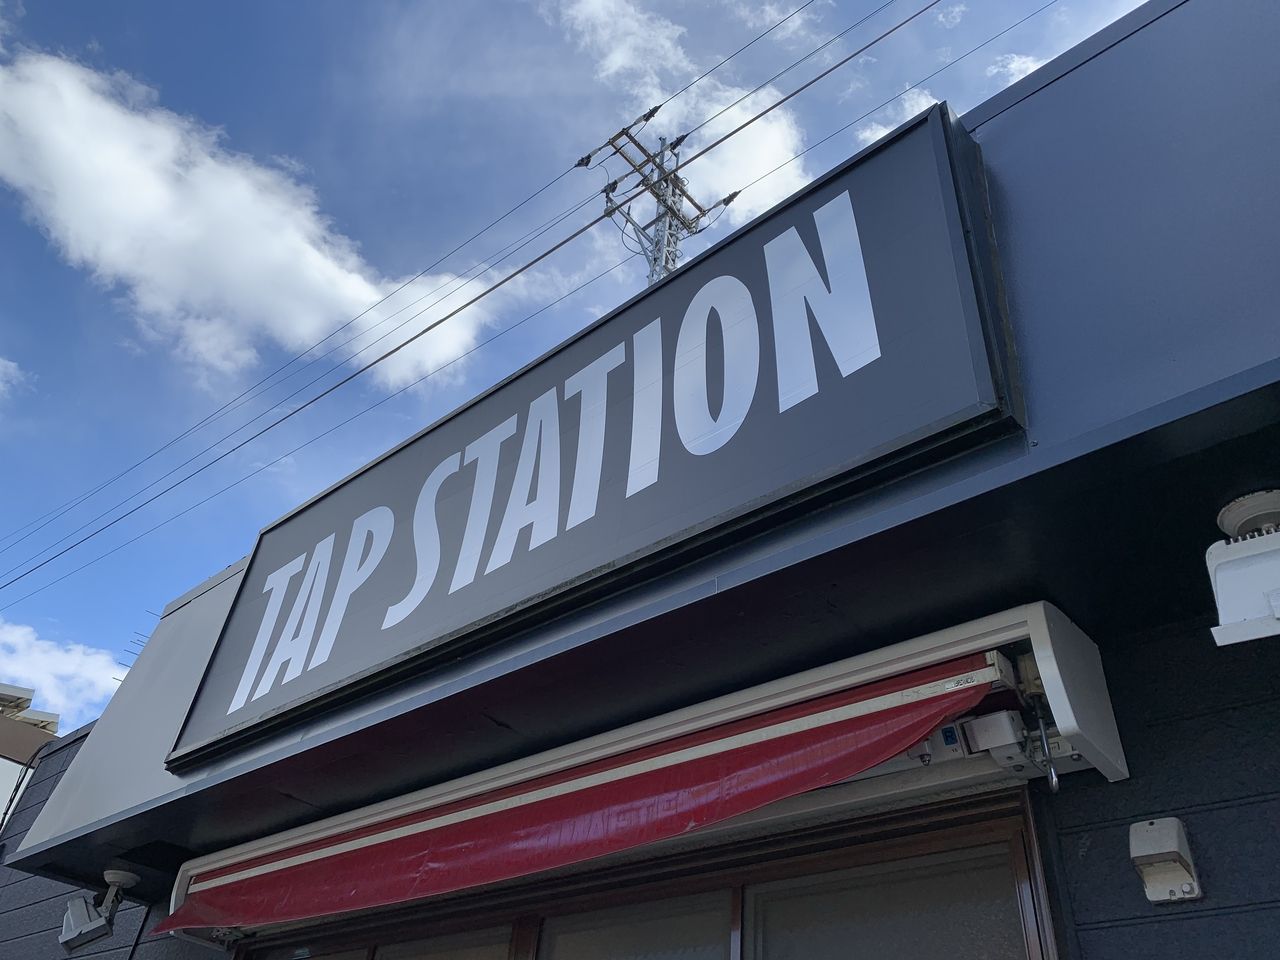 【三郷市食べ歩きブログ】クラフトビール専門店「TAP STATION」の明日プレオープンですね！